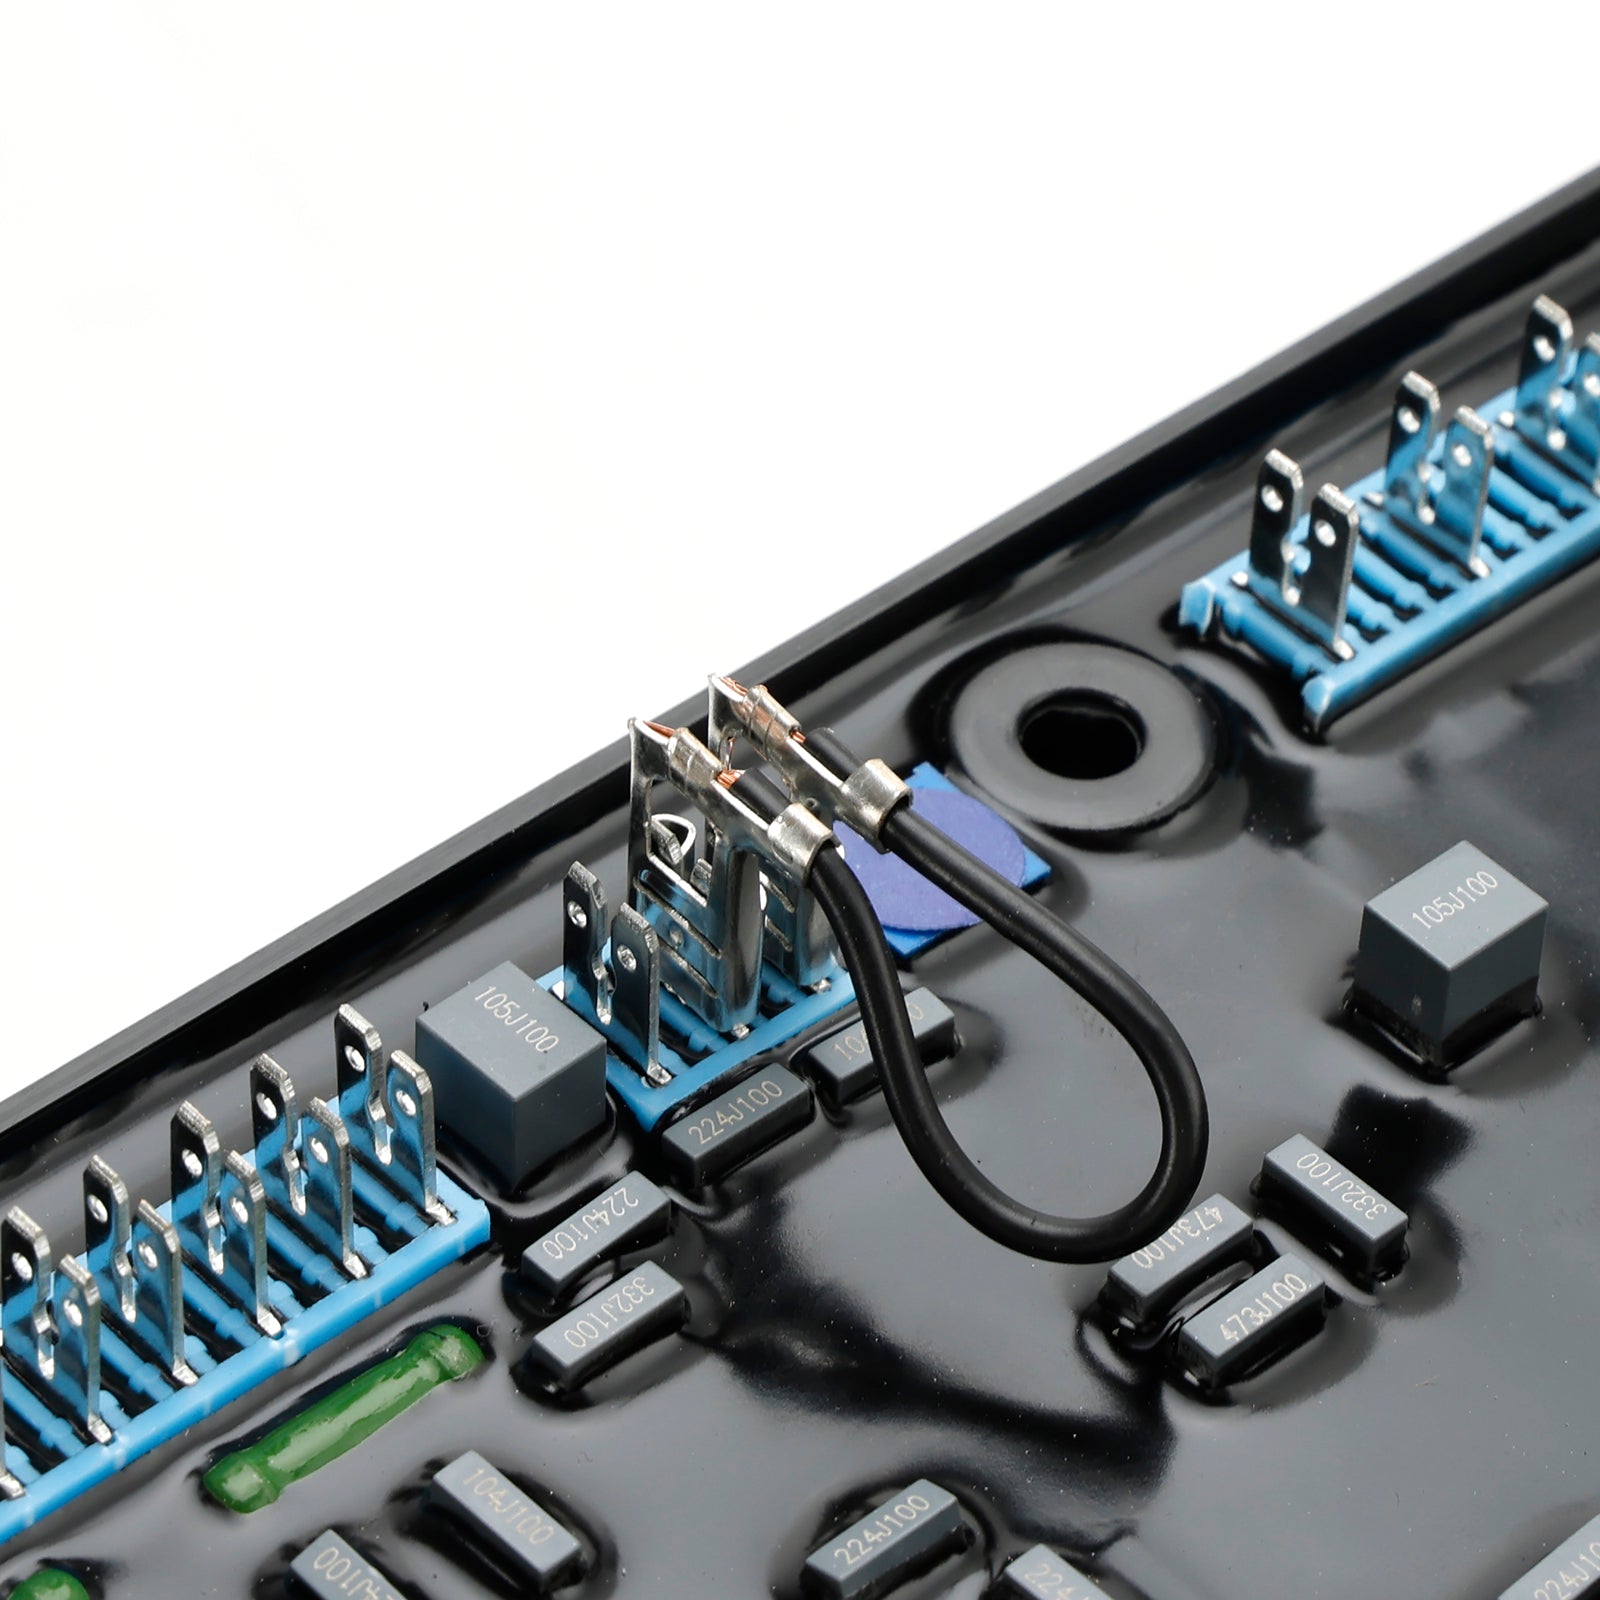 Remplacement automatique du régulateur de tension AVR MX321 pour générateur